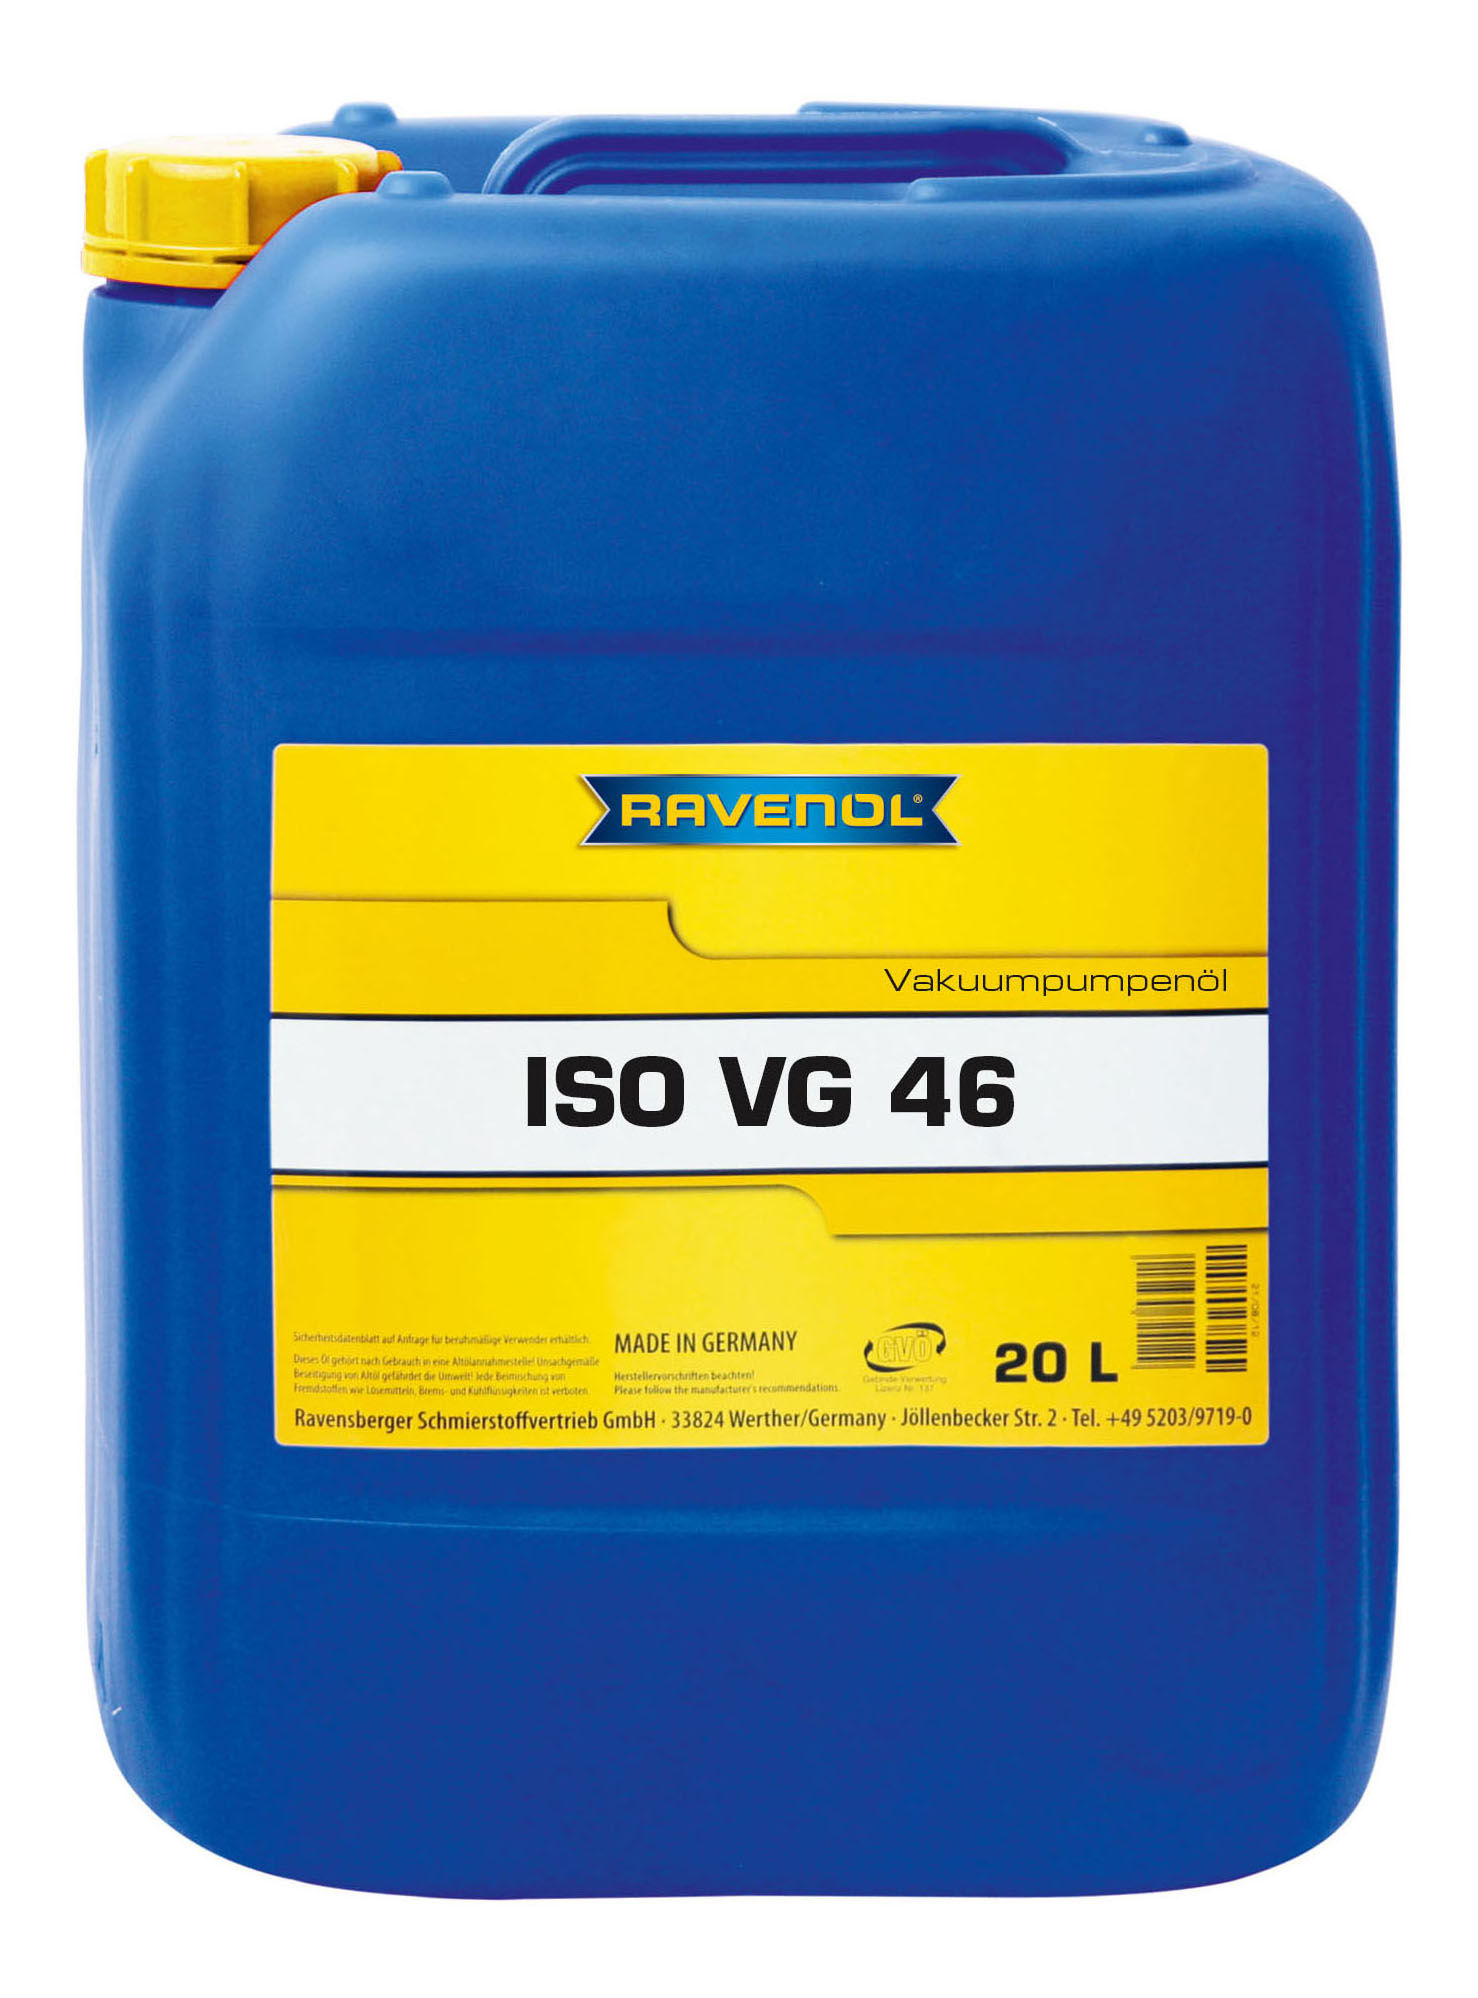 Вакуумное масло RAVENOL Vakuumpumpenoel ISO VG 46 20л 1330705-020-01-999